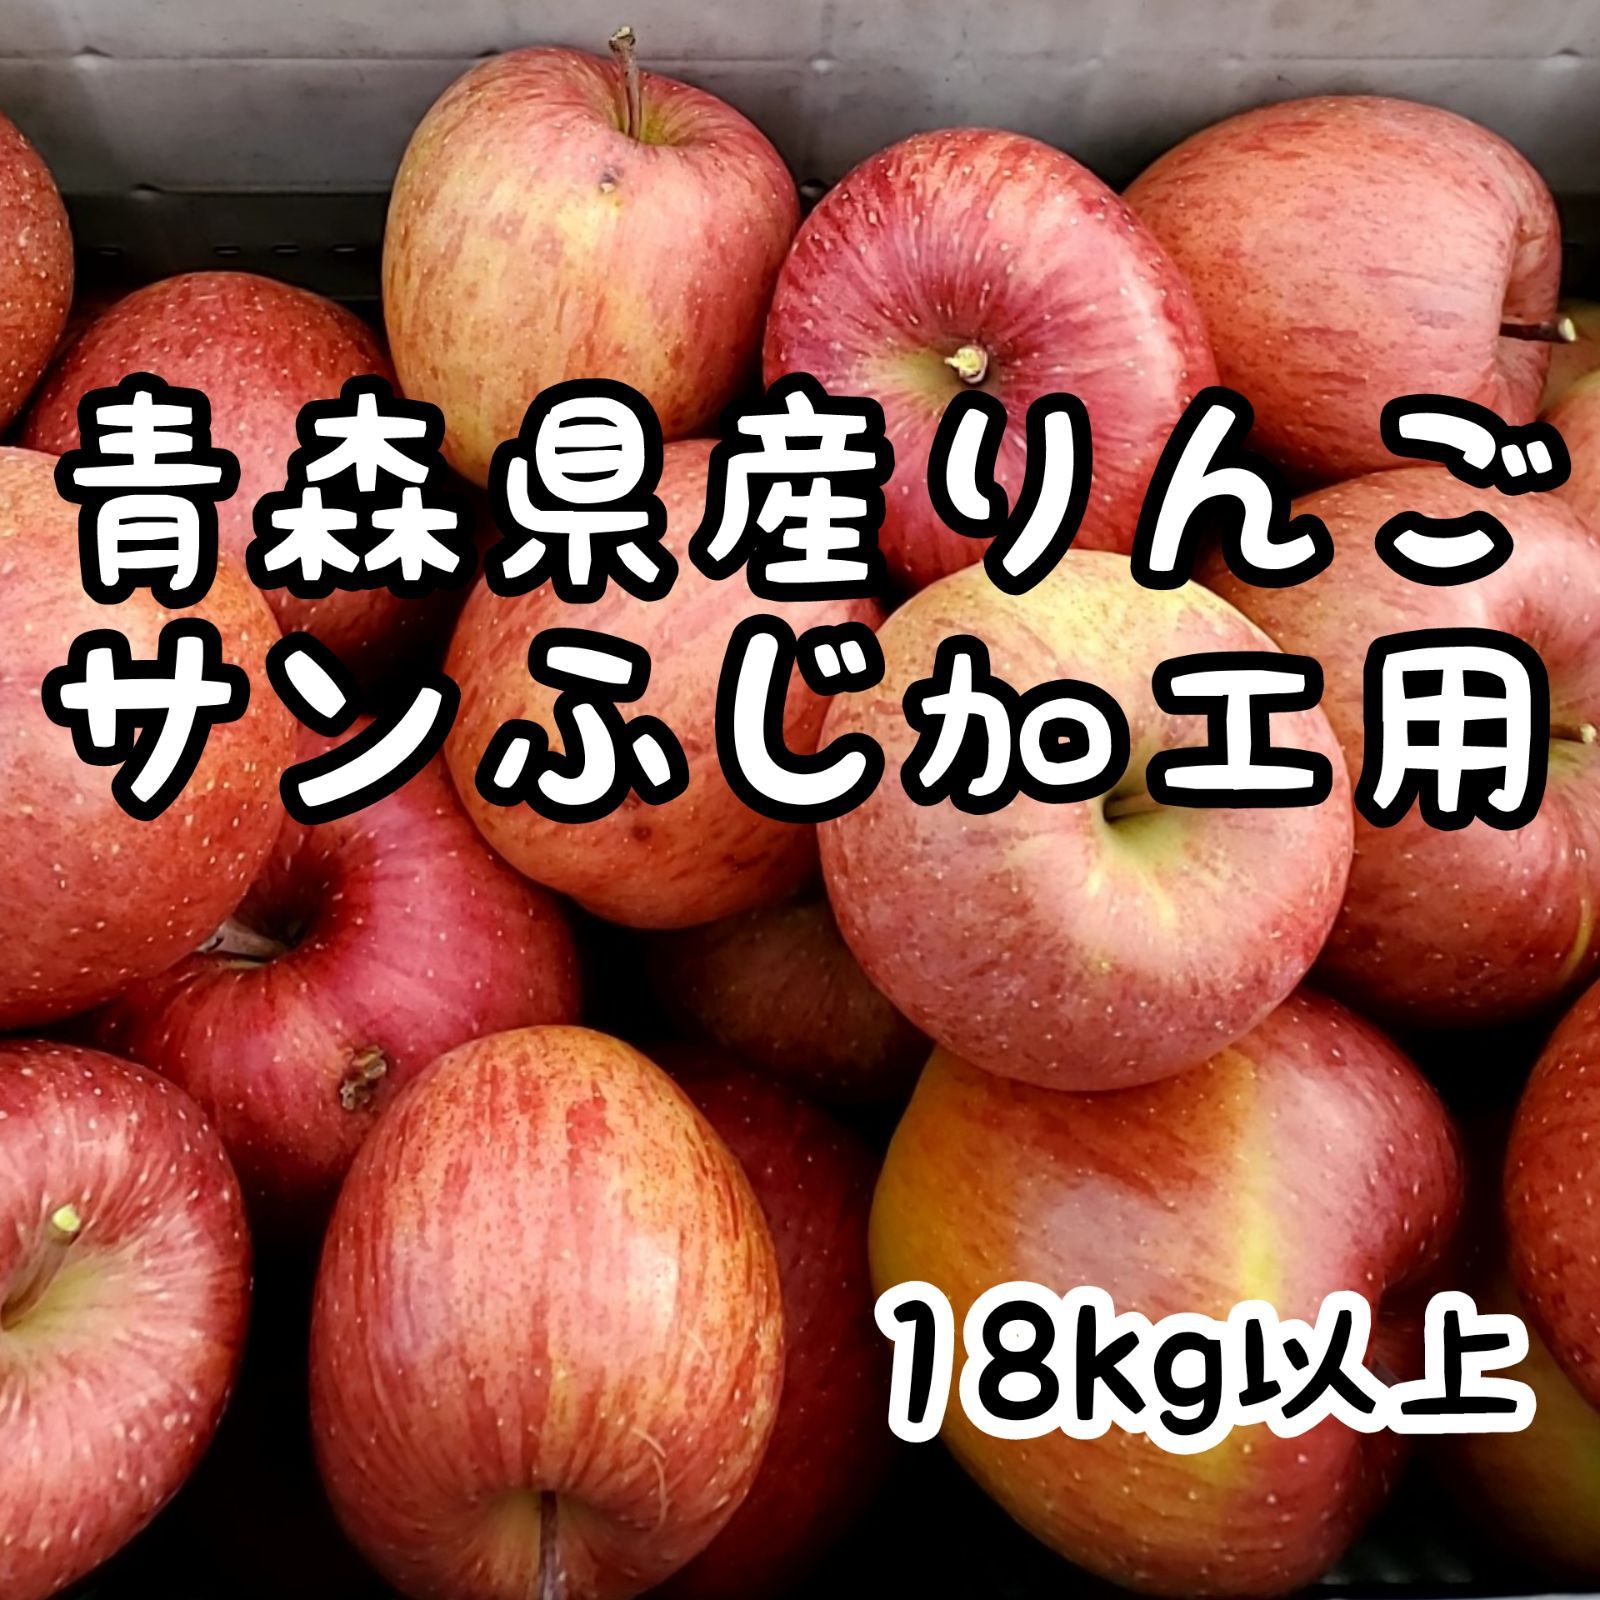 青森県産  有袋ふじ りんご  加工用  20kg  農家直送 送料無料 リンゴ